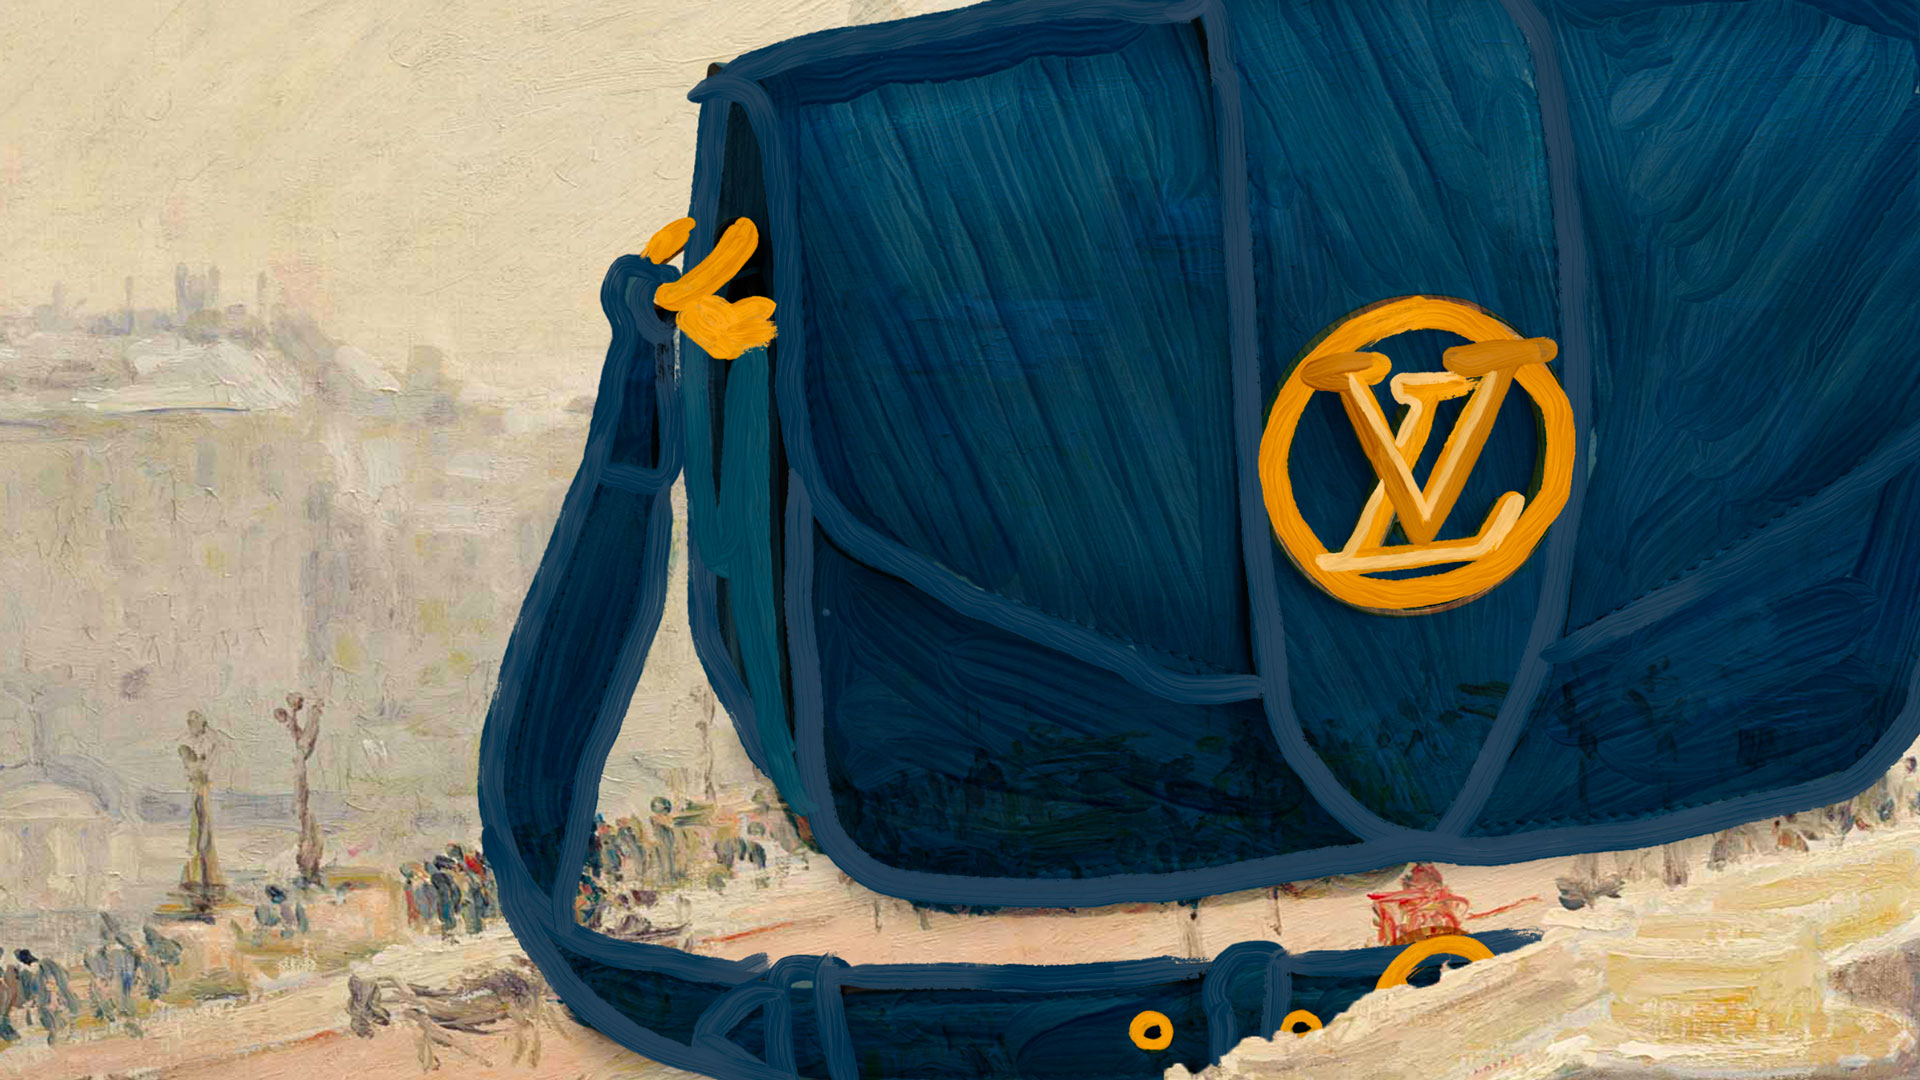 POSH - Louis Vuitton presenta la nuova borsa LV Pont 9 @louisvuitton # louisvuitton #bag ##lvpont9 #vuitton #vuittonbag #exclusive #luxlifestyle  #luxurylifestyle #luxury #itbag